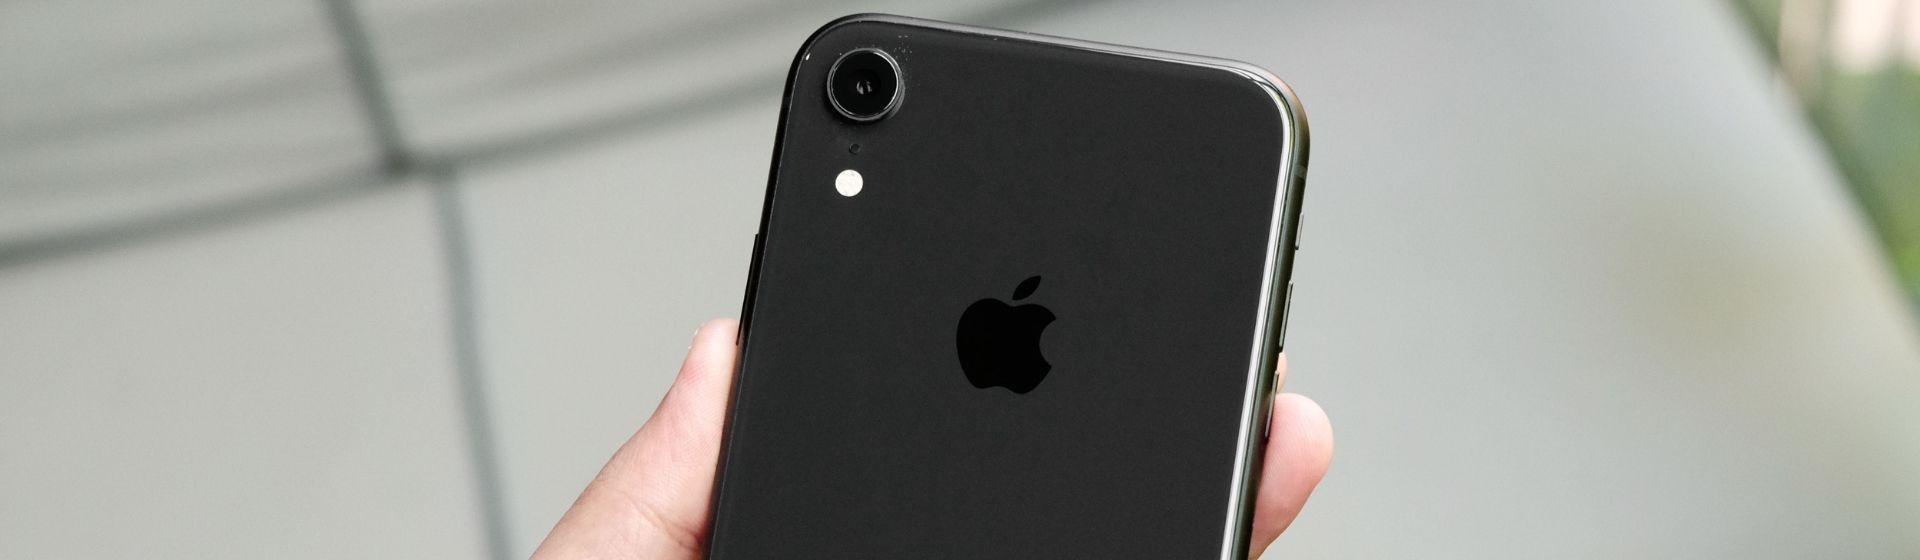 iPhone XR vale a pena? Veja os prós e contras do celular da Apple